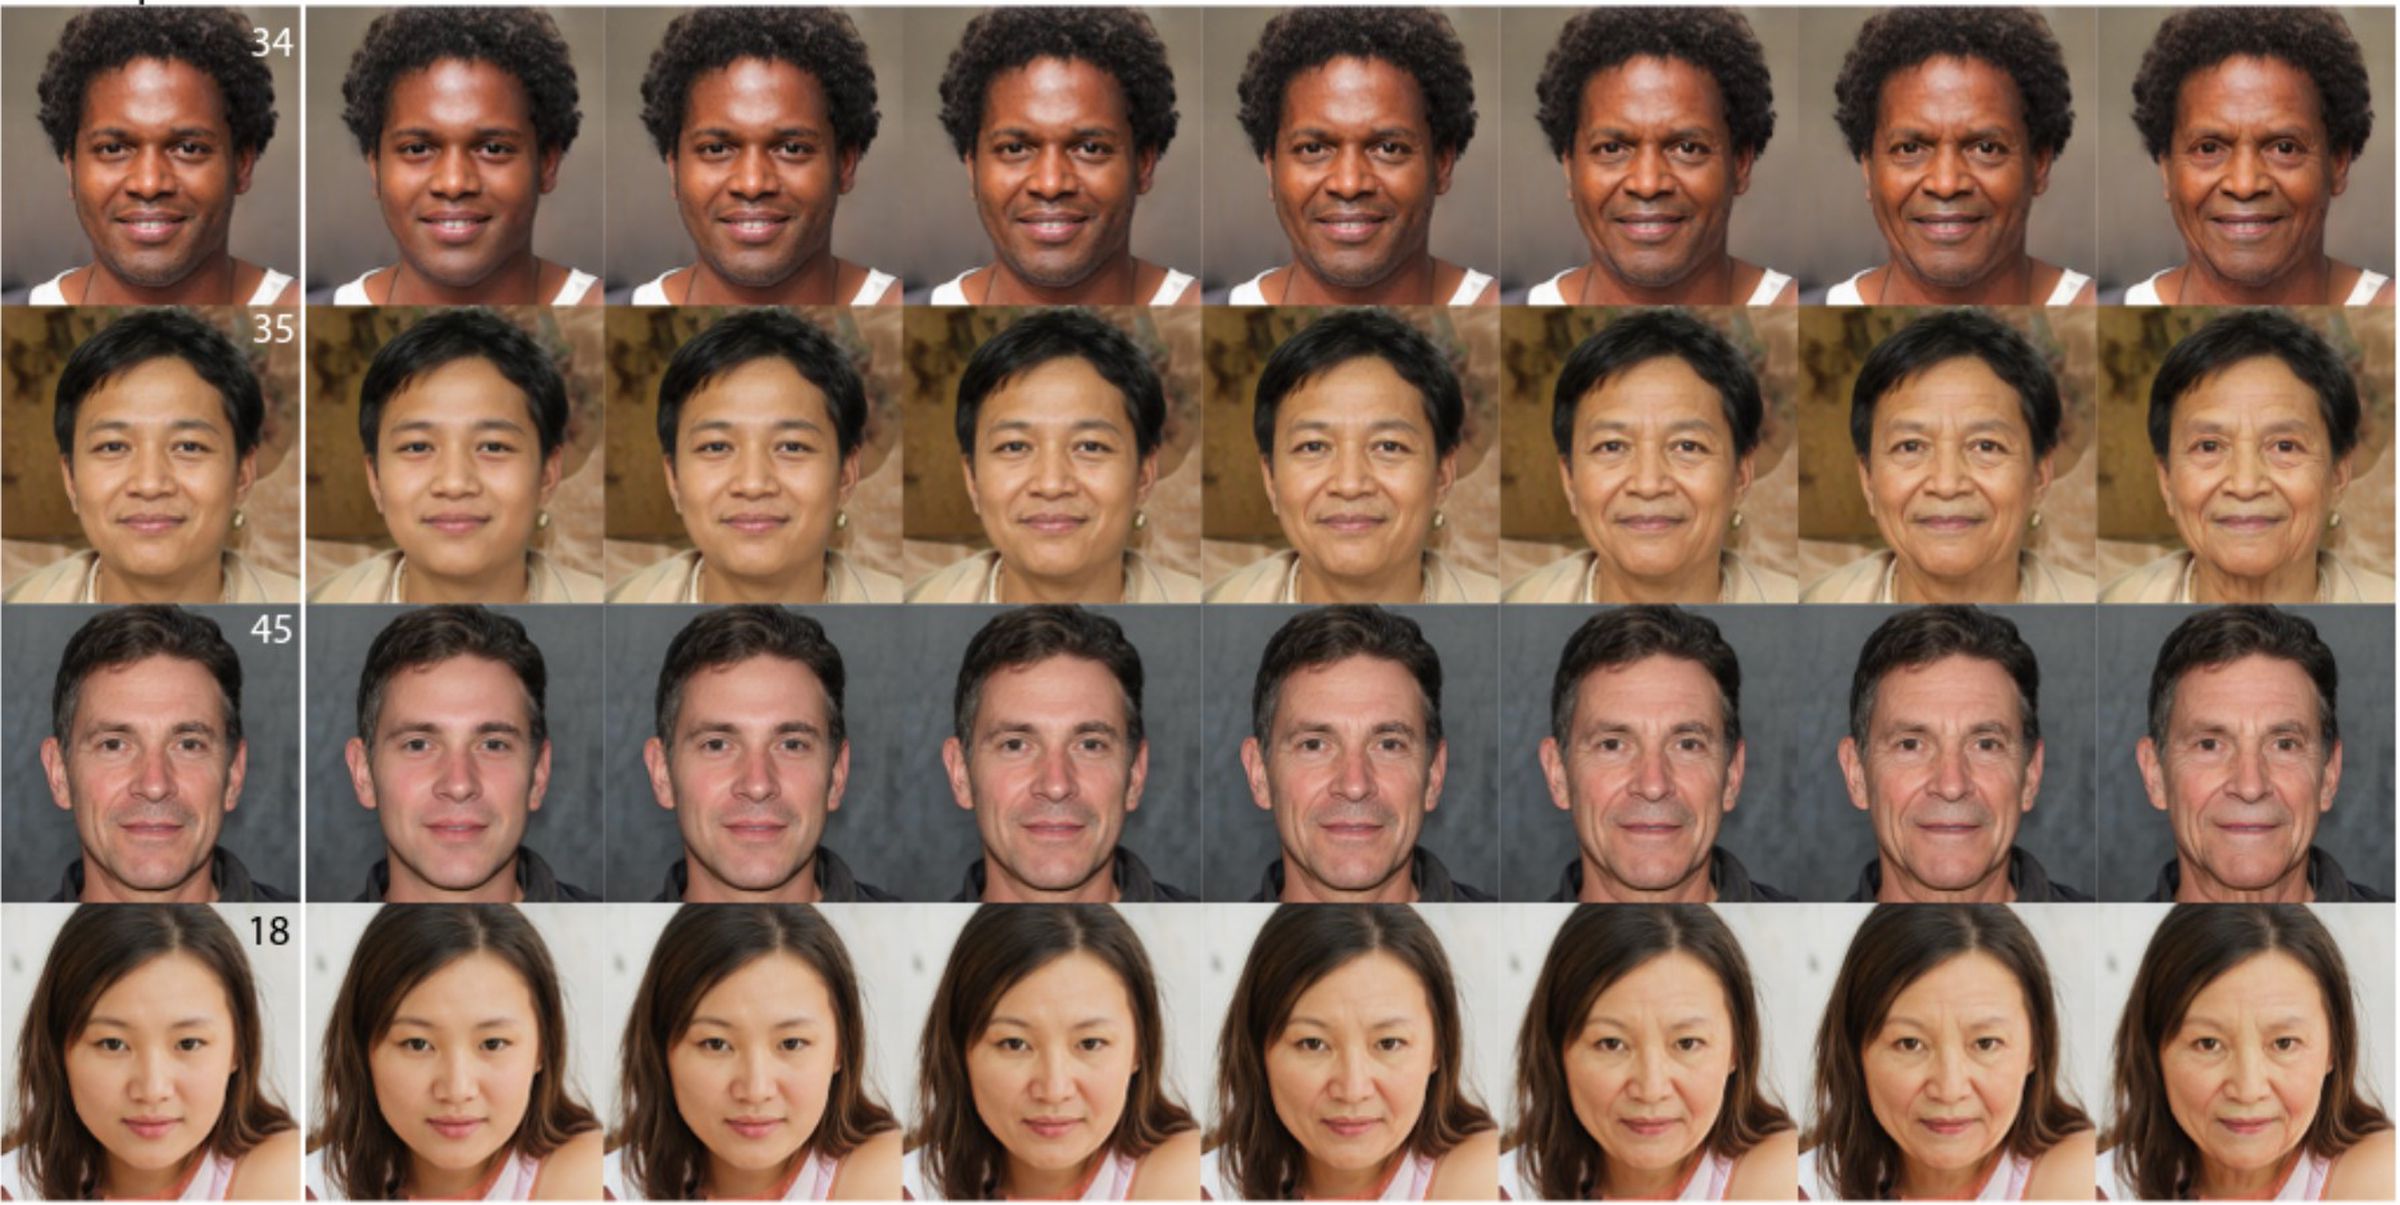 Filas de imágenes de rostros humanos creados digitalmente en varias edades